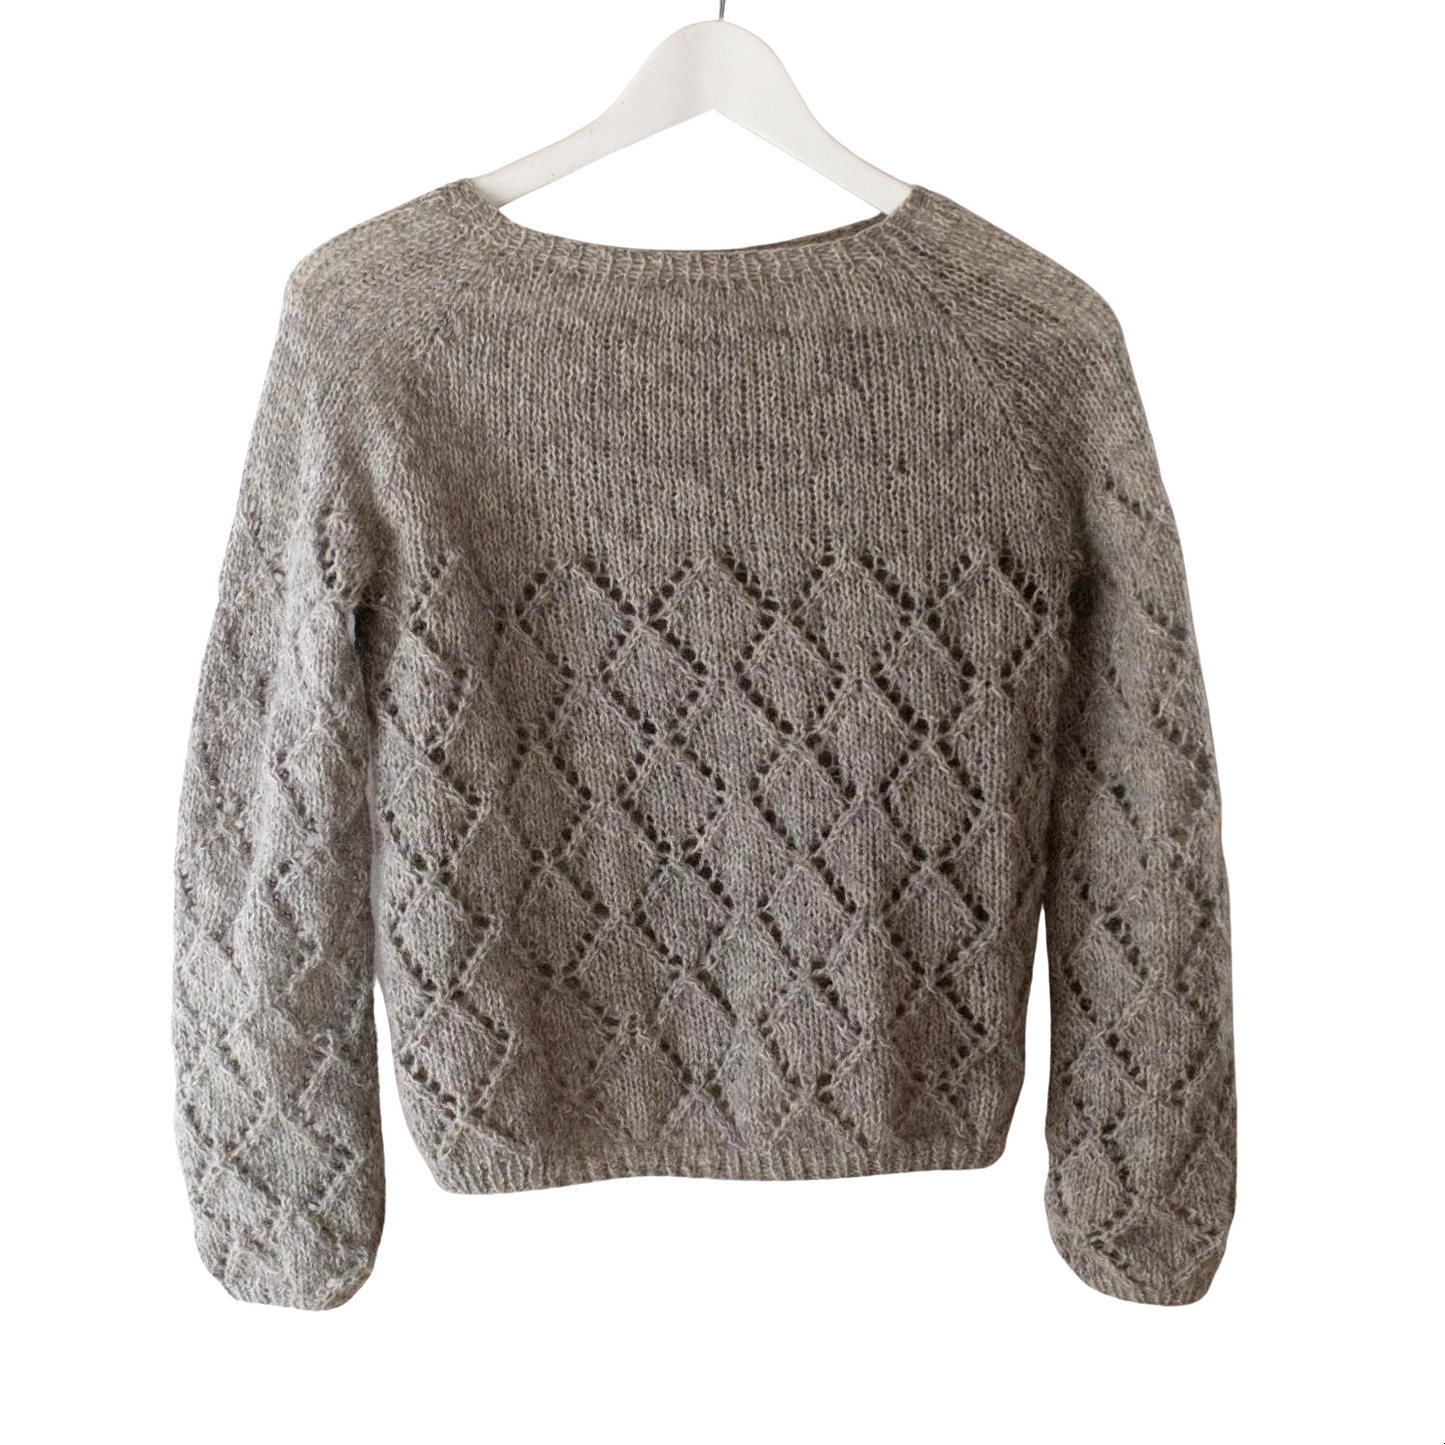 Flykrur sweater PDF Pattern